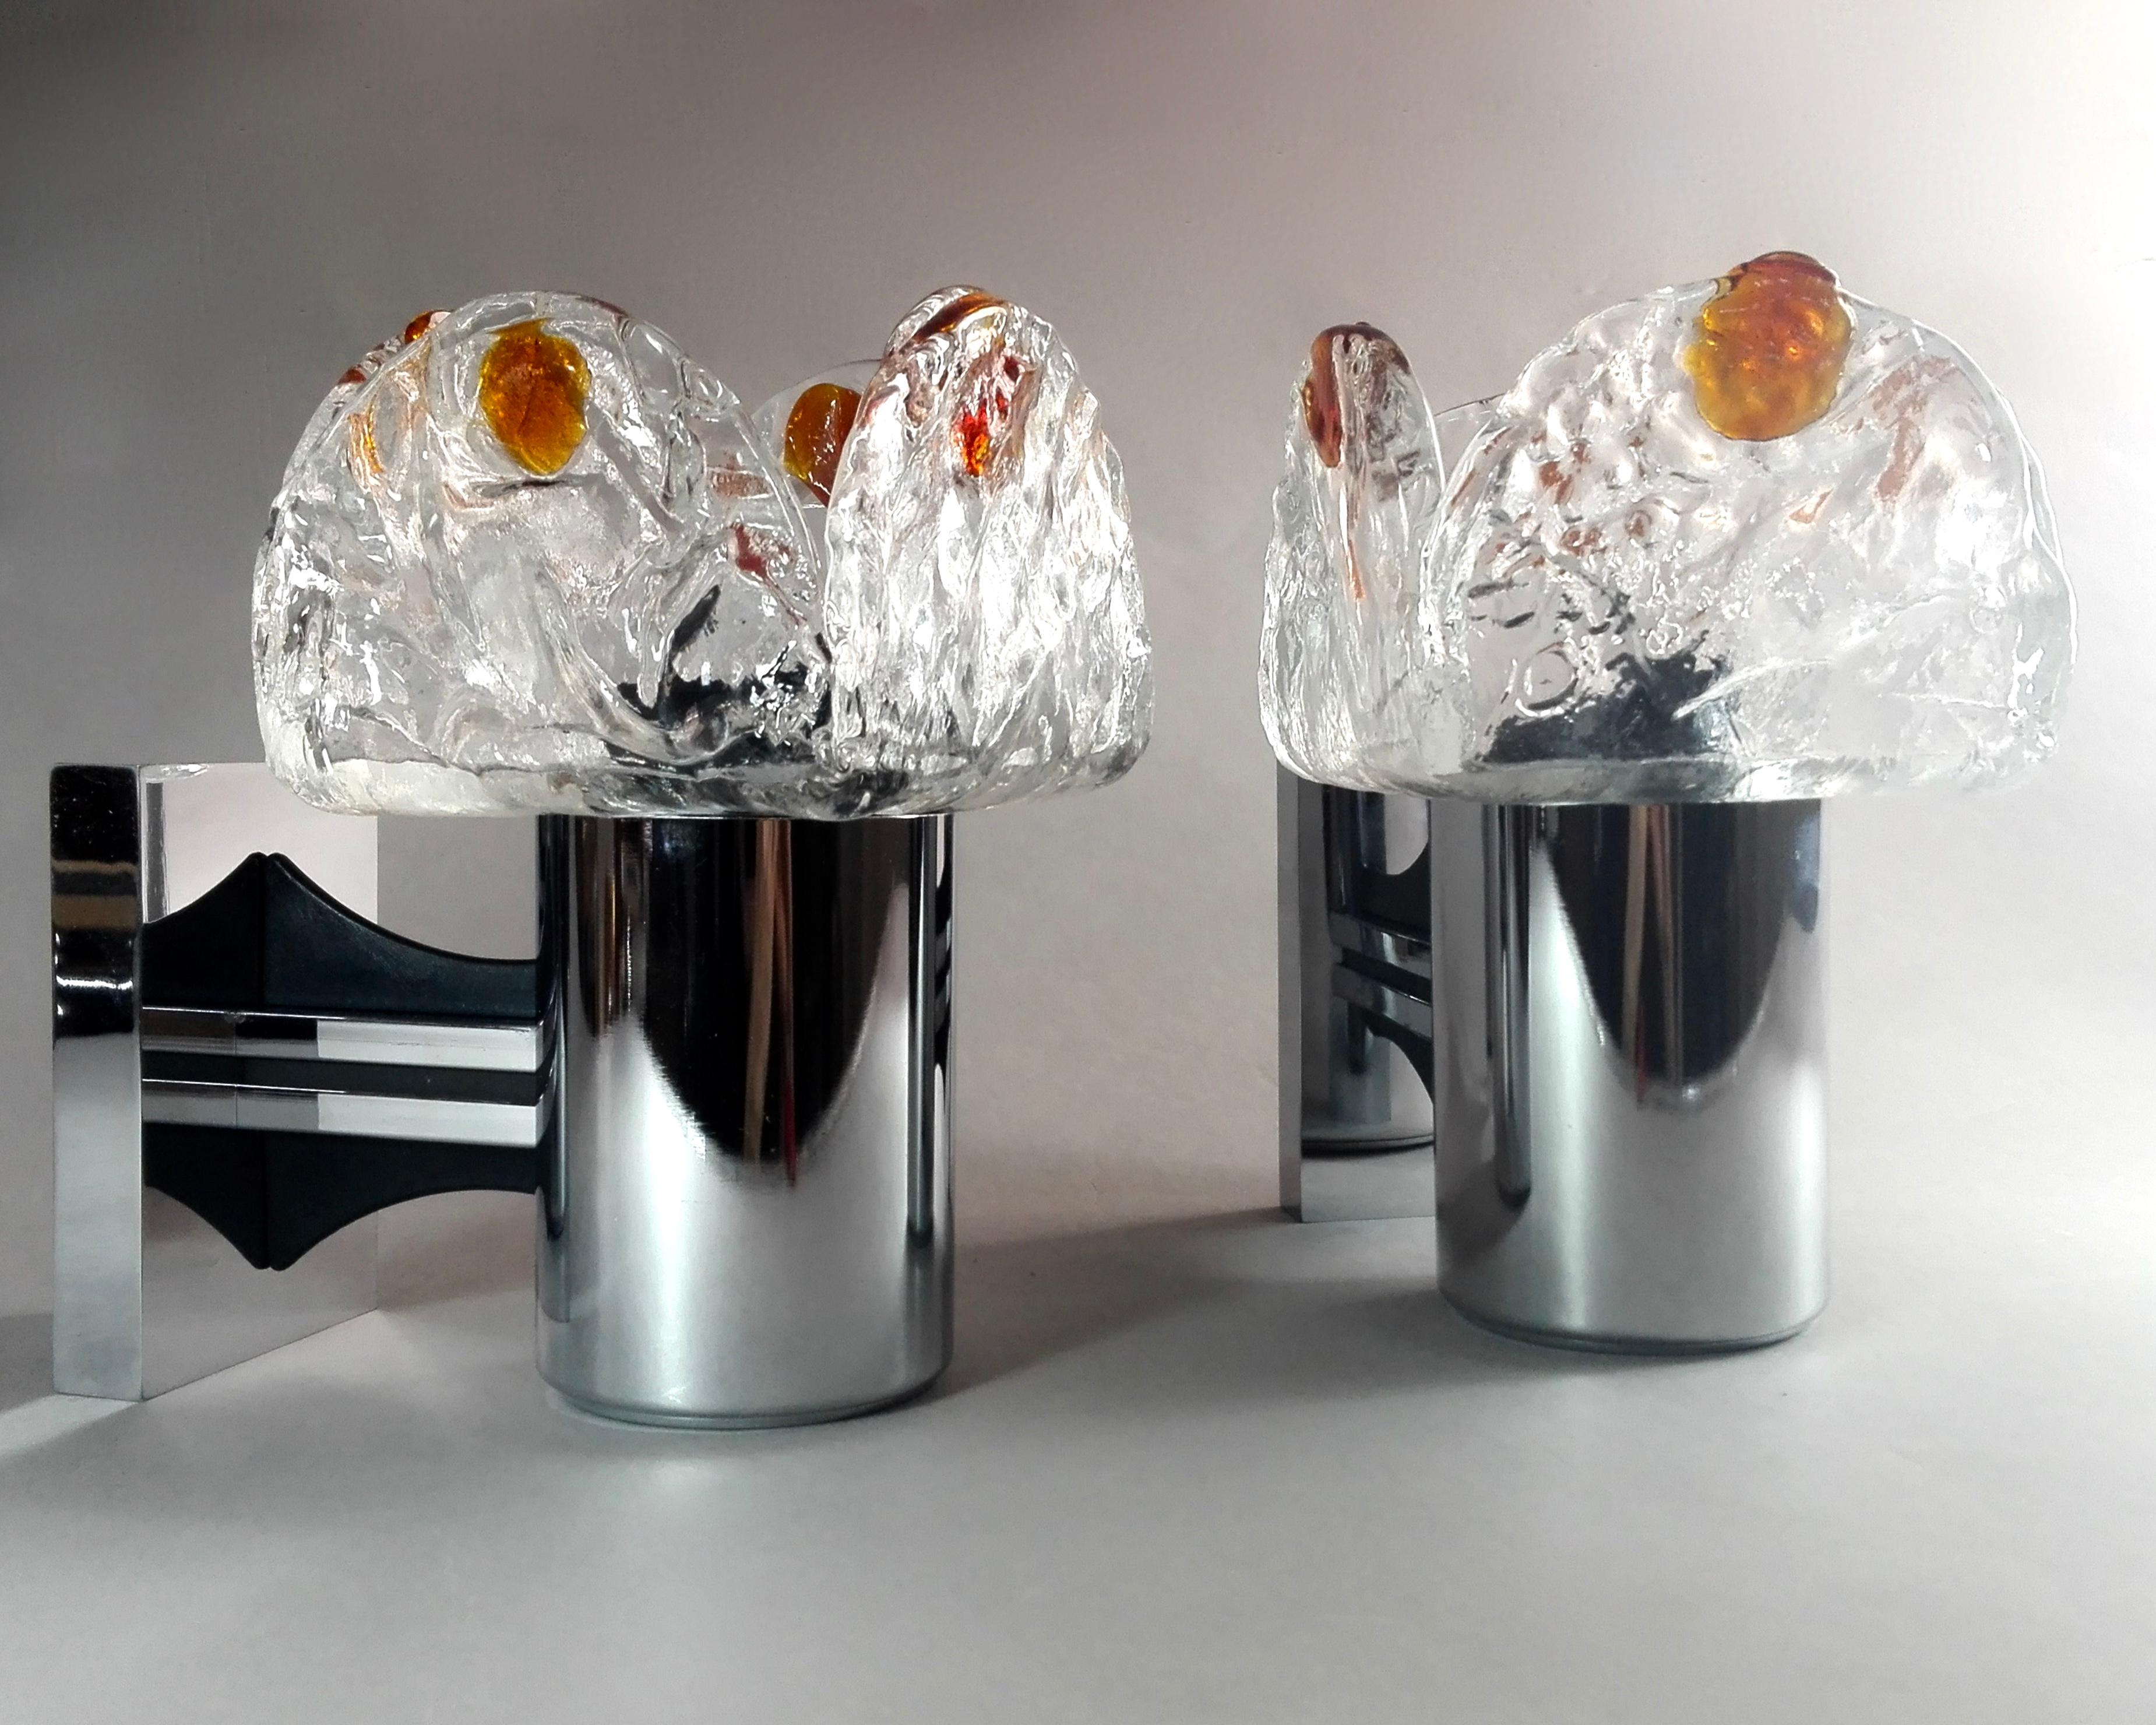 Paar schöne und seltene italienische Muranoglas- und Metallleuchter aus den 1960er Jahren mit einer sehr essentiellen Form. Es gibt kein Markenzeichen auf den Lampen, aber die Verwendung dieser Art von brutalistischem schwerem Muranoglas kann auf